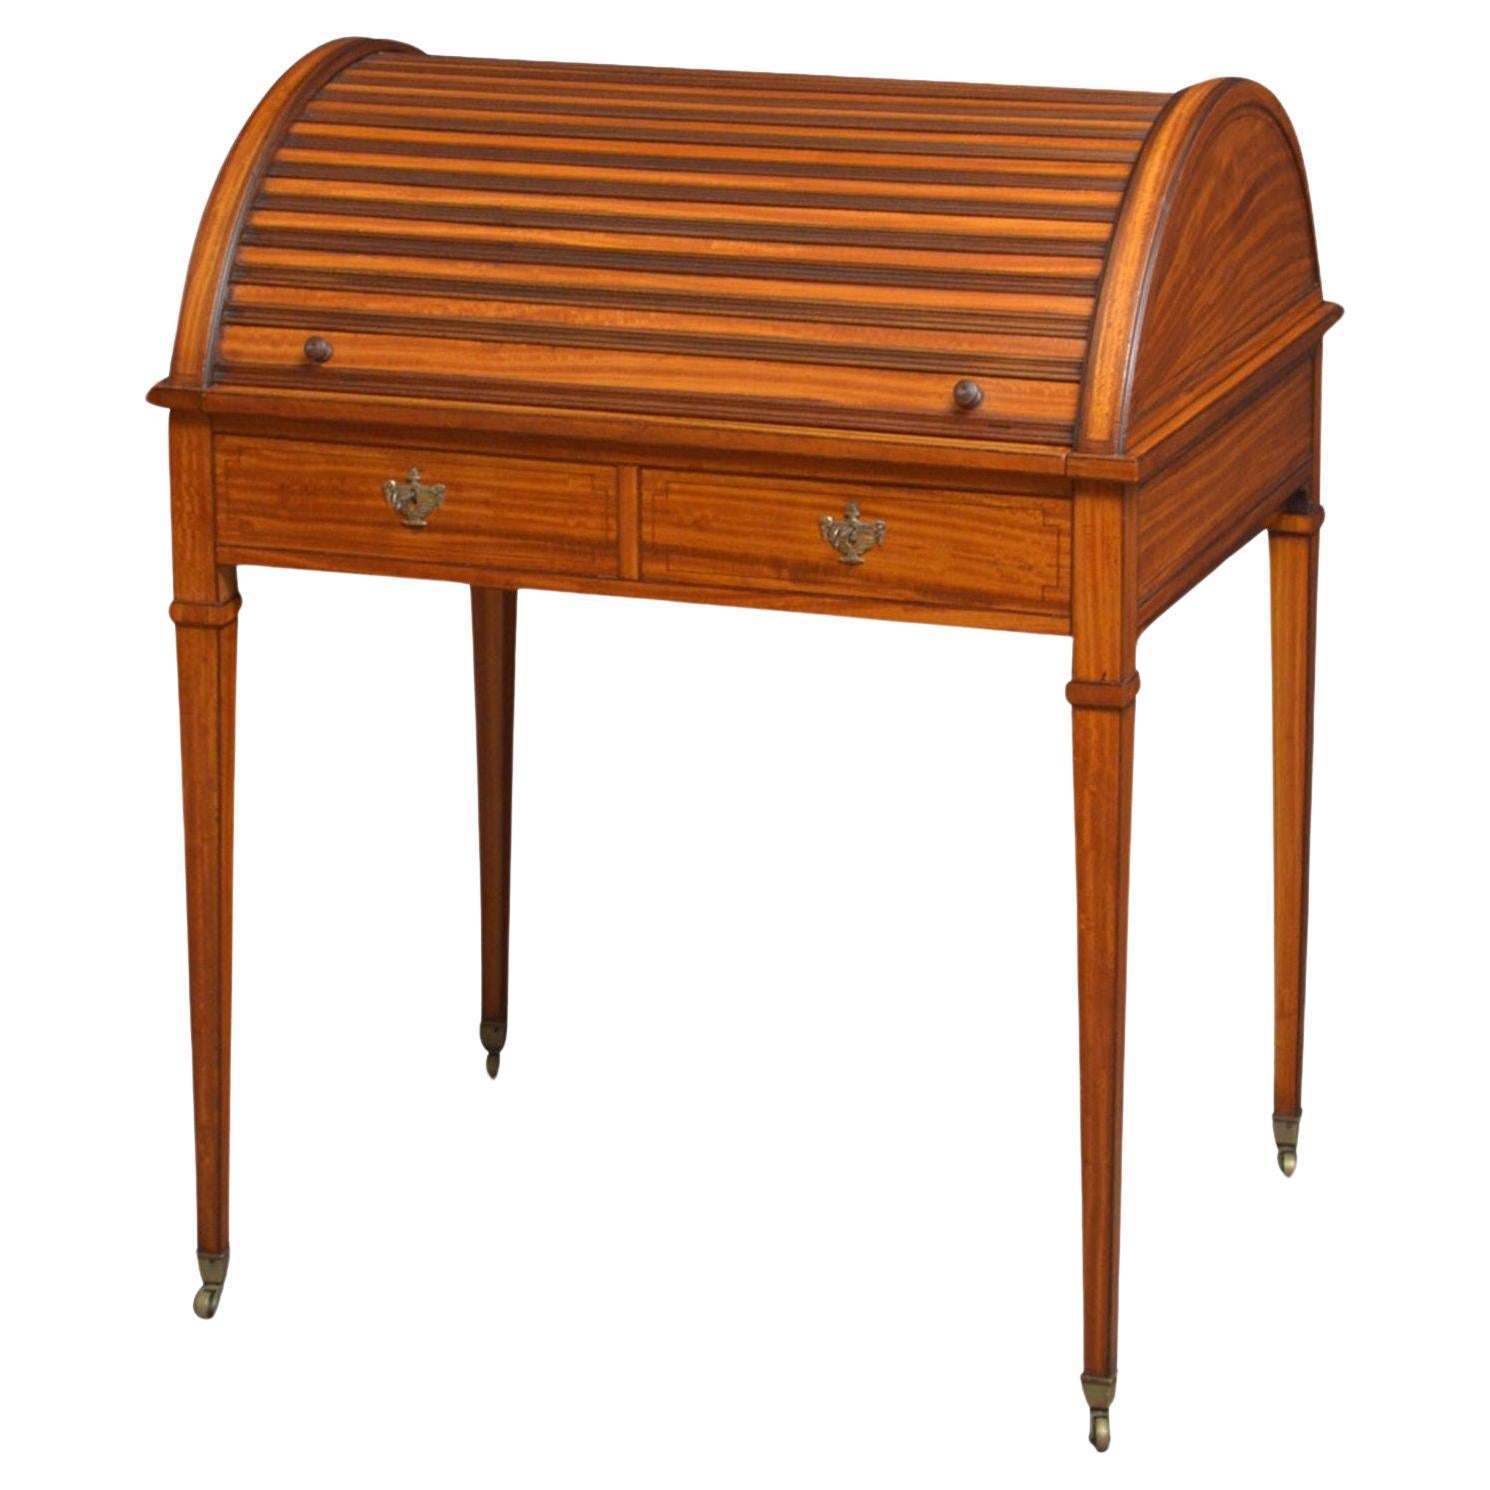 Superba scrivania in legno satinato Sheraton Revival